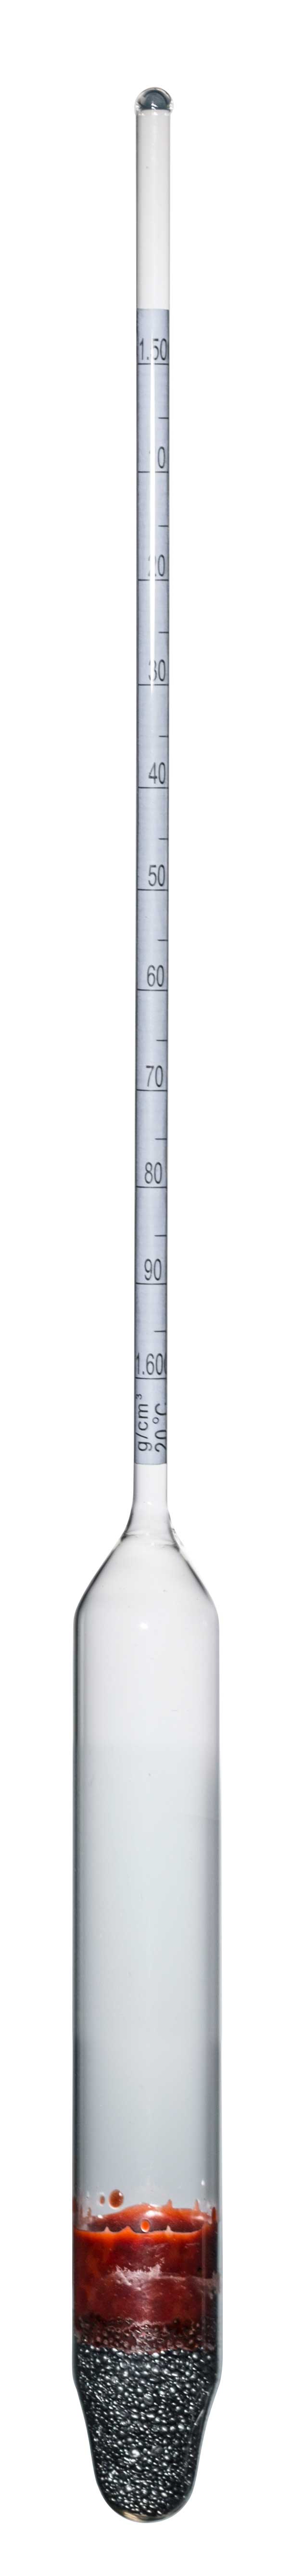 Densimetri di precisione, rango totale 0,100g/cm3, senza termometro, 300 mm lunghezza